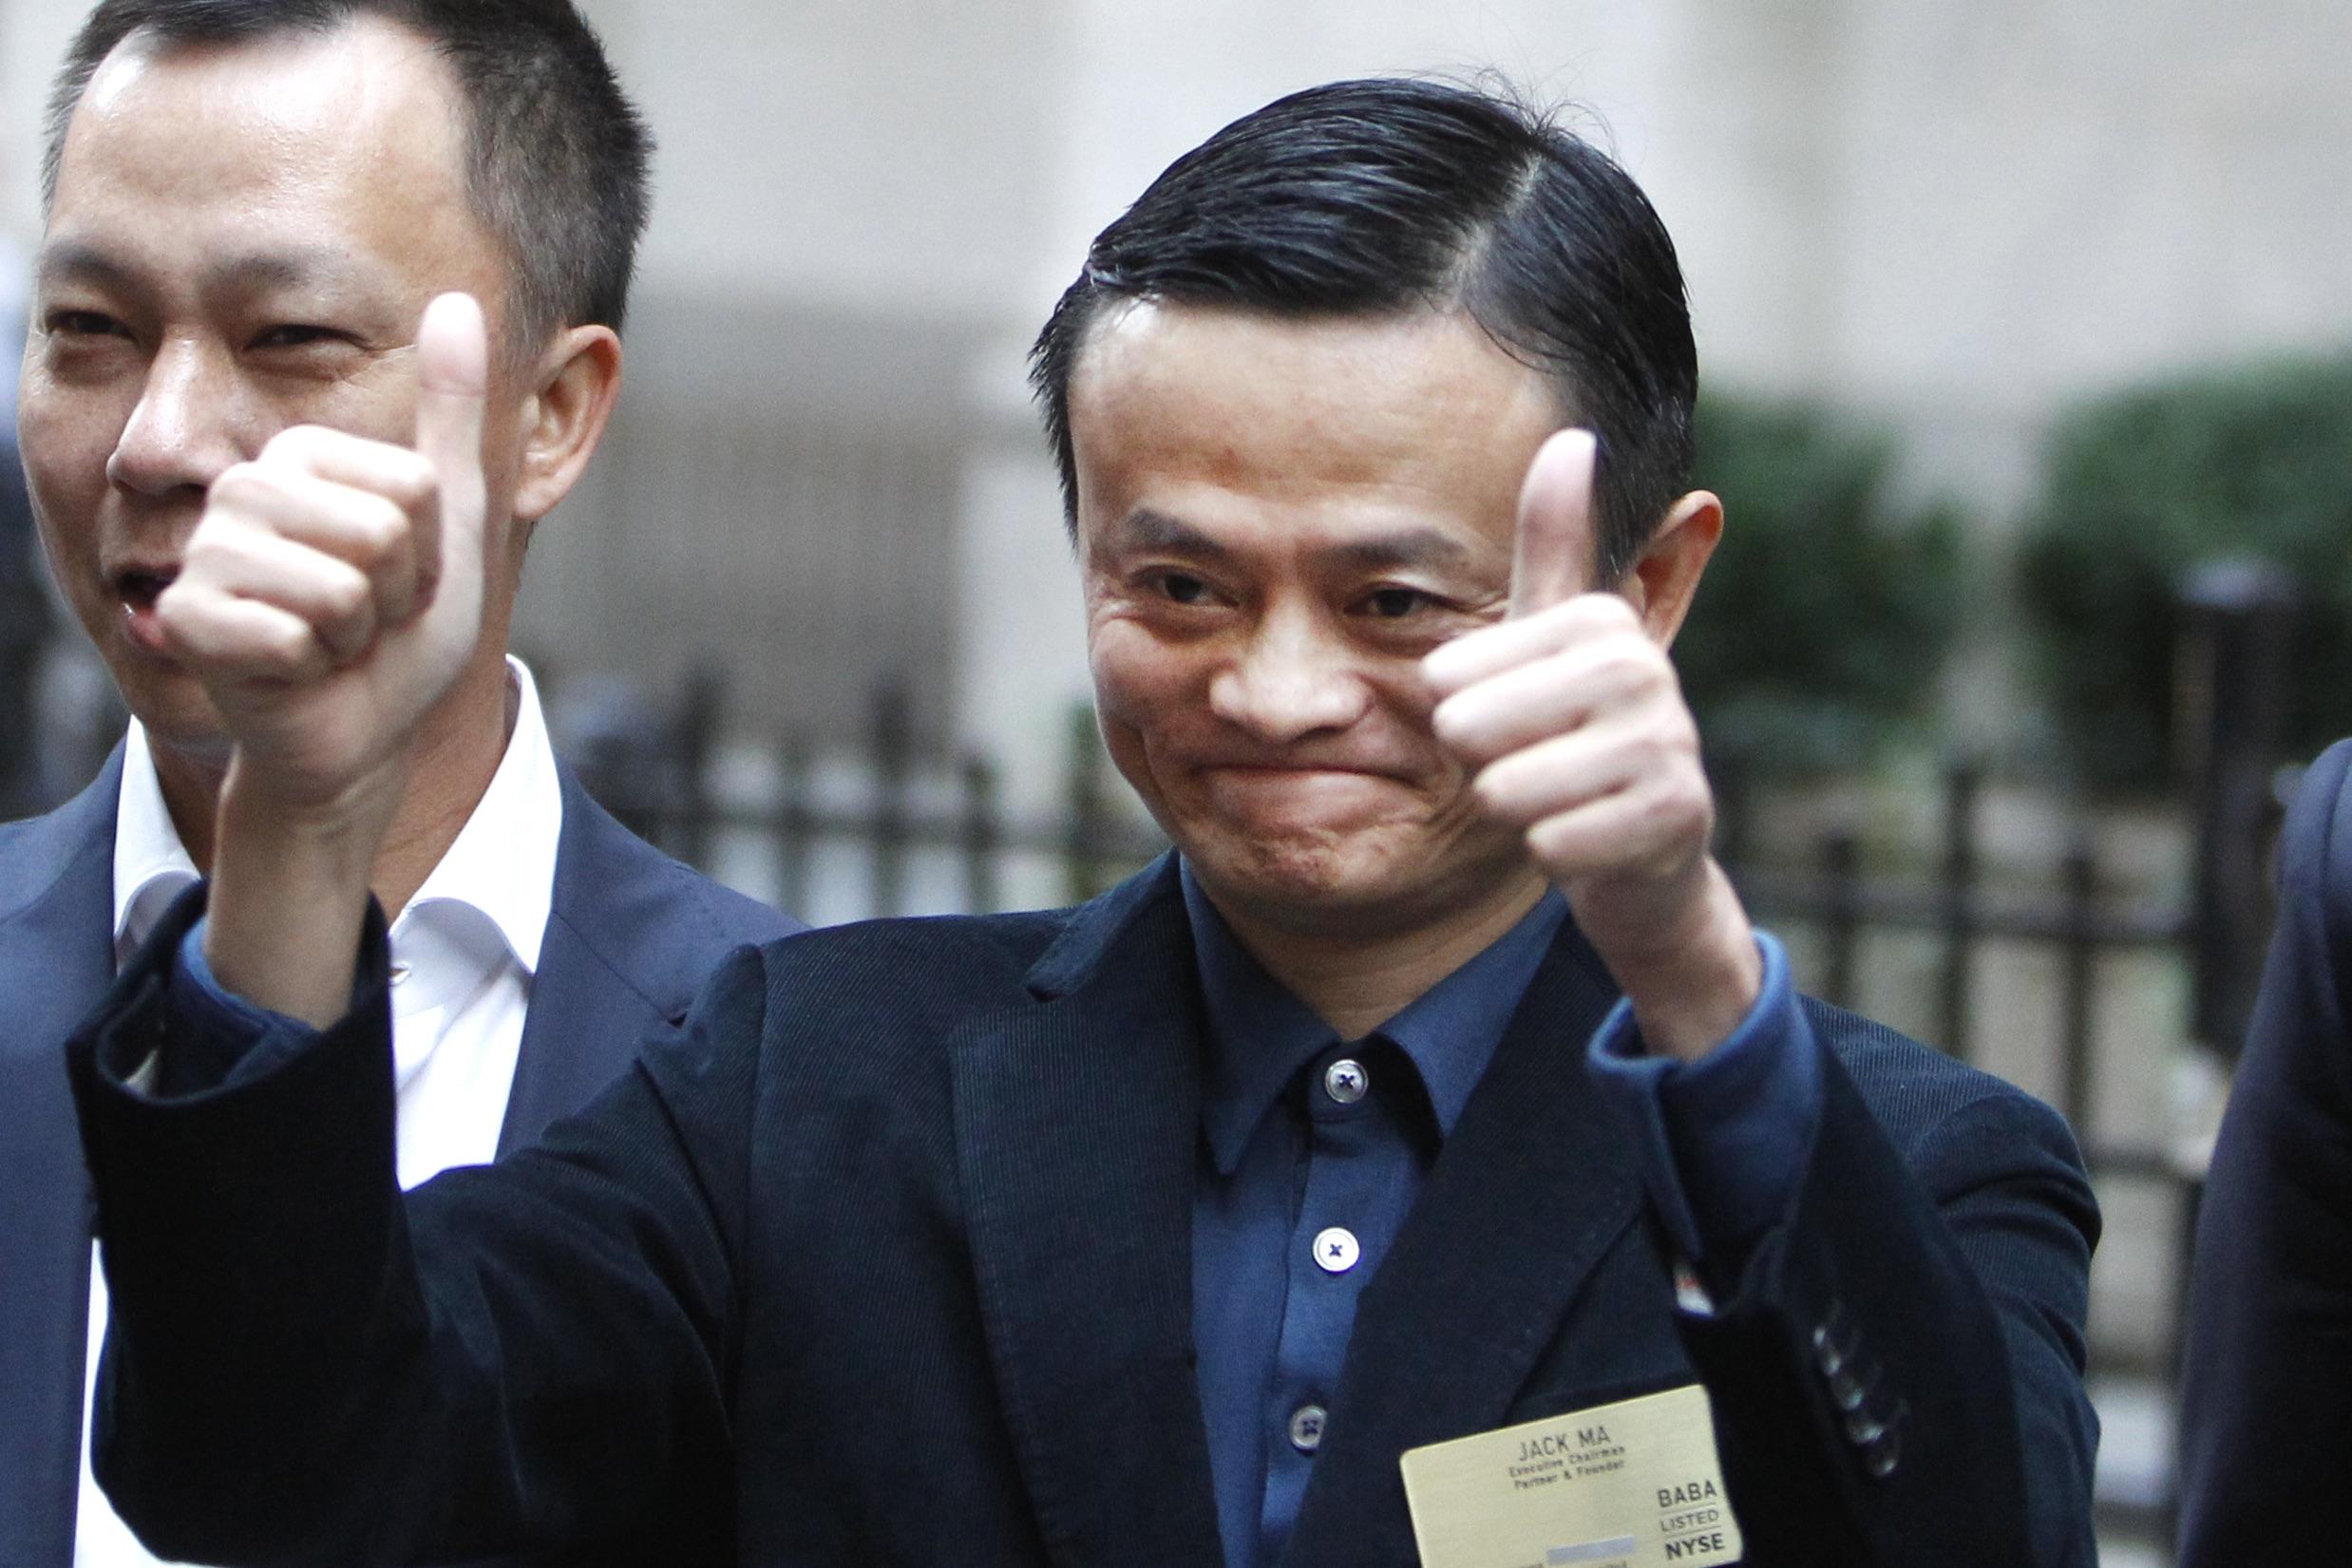 Kinas rigeste mand Jack Ma har skabt en fond, som skal arbejde for mindre forurening. Han siger selv, at han ikke ønsker at ændre på det politiske system – kun politikken – men den grænse er hårfin, vurderer Darrel West. Foto: AP/Jason DeCrow